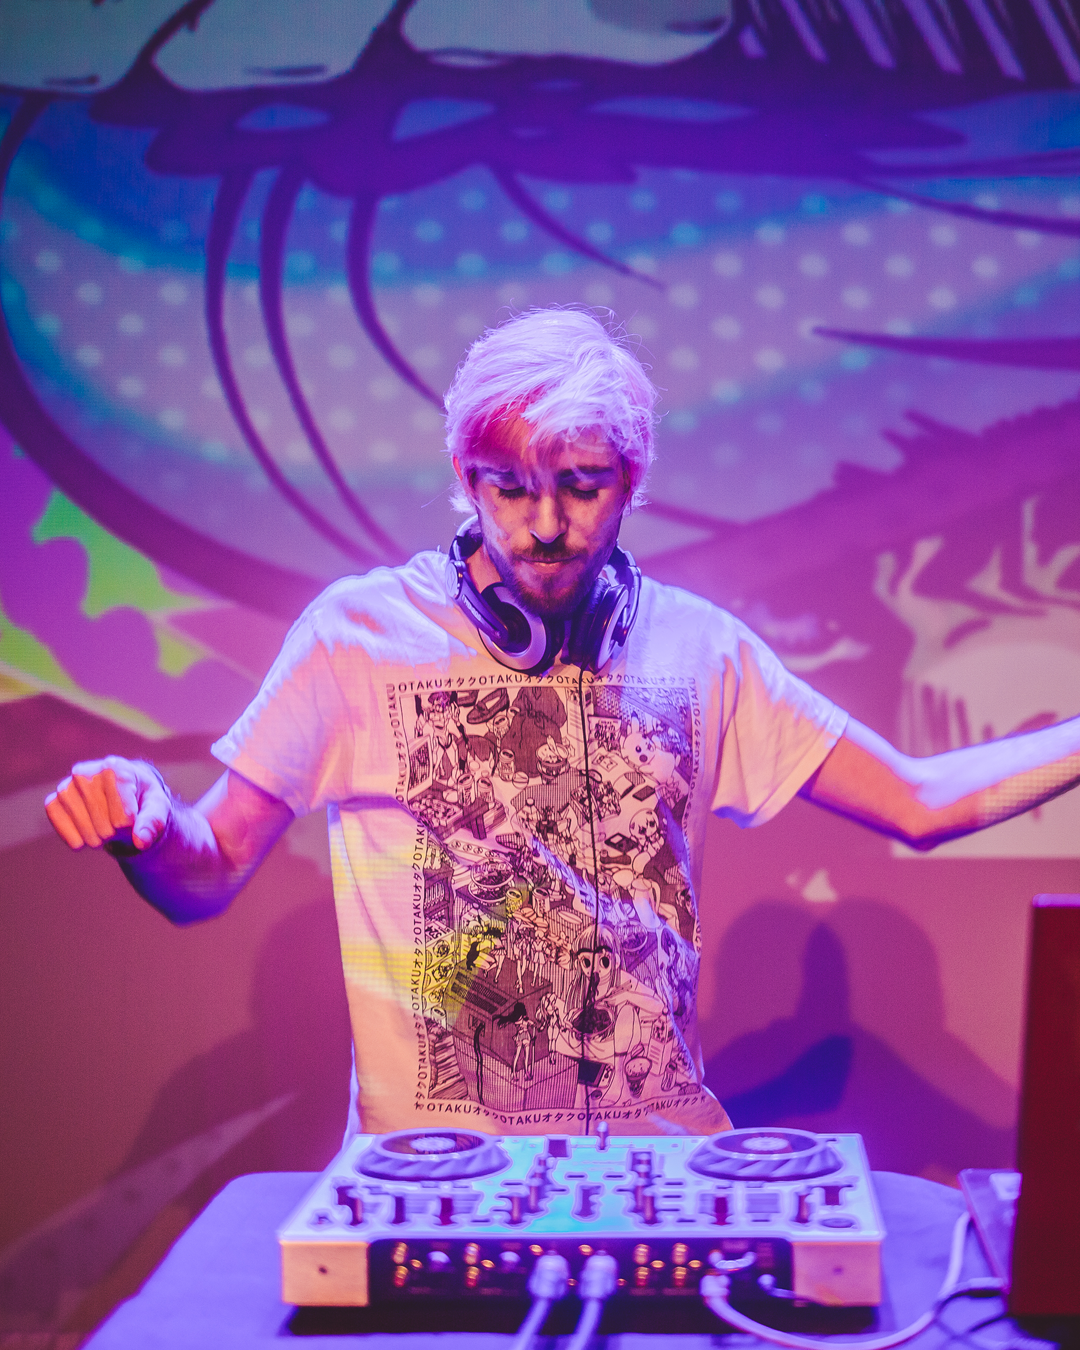 Un DJ con el pelo rosa haciendo de DJ y una imagen de Jotaro de Jojos Bizarre Adventure de fondo